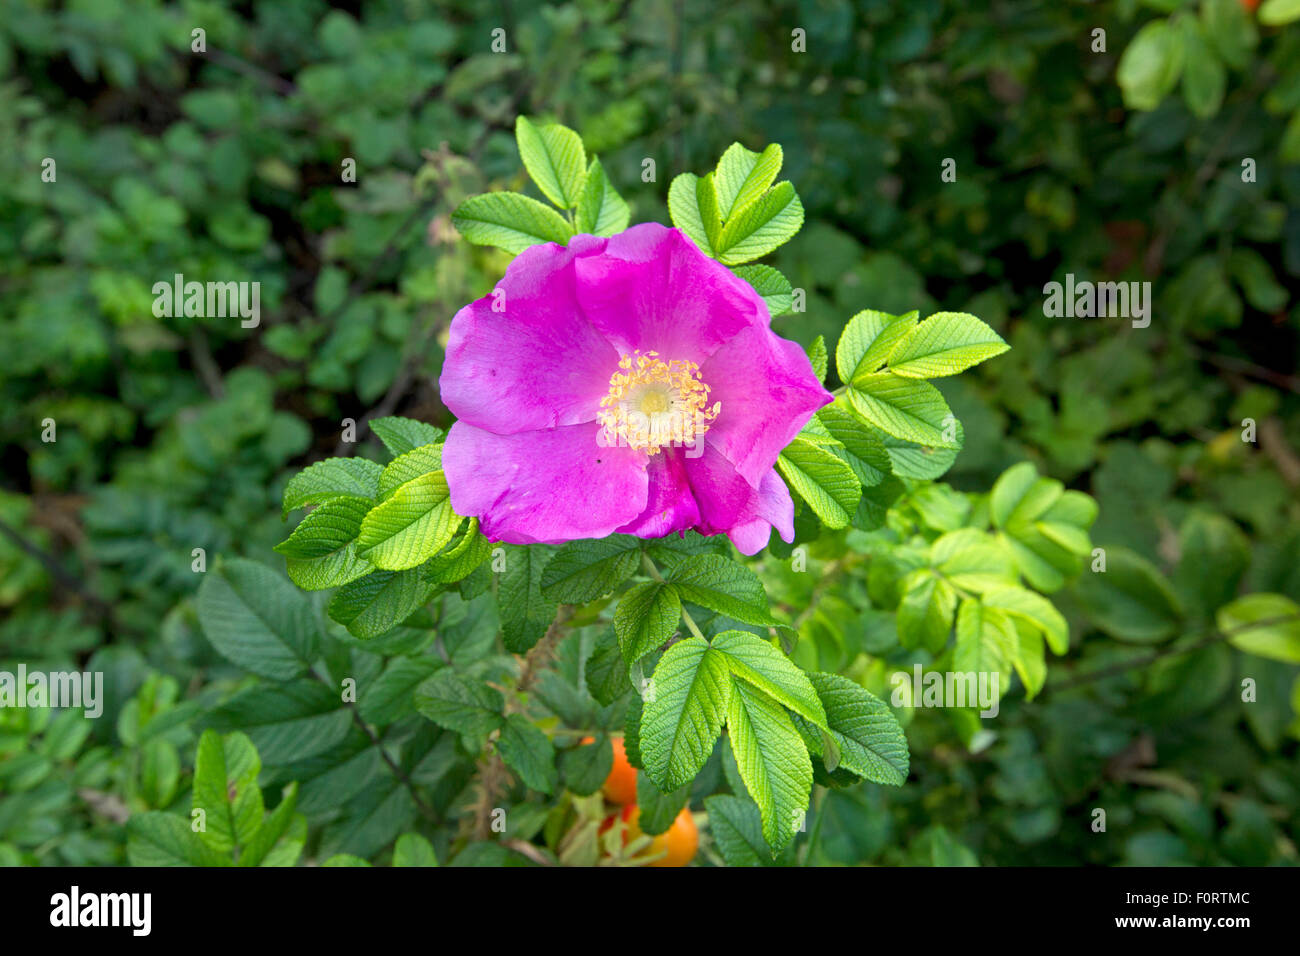 Rose (Rosa rugosa) flowering, Grande-Synthe, Dunkirk, France, September 2010 Stock Photo